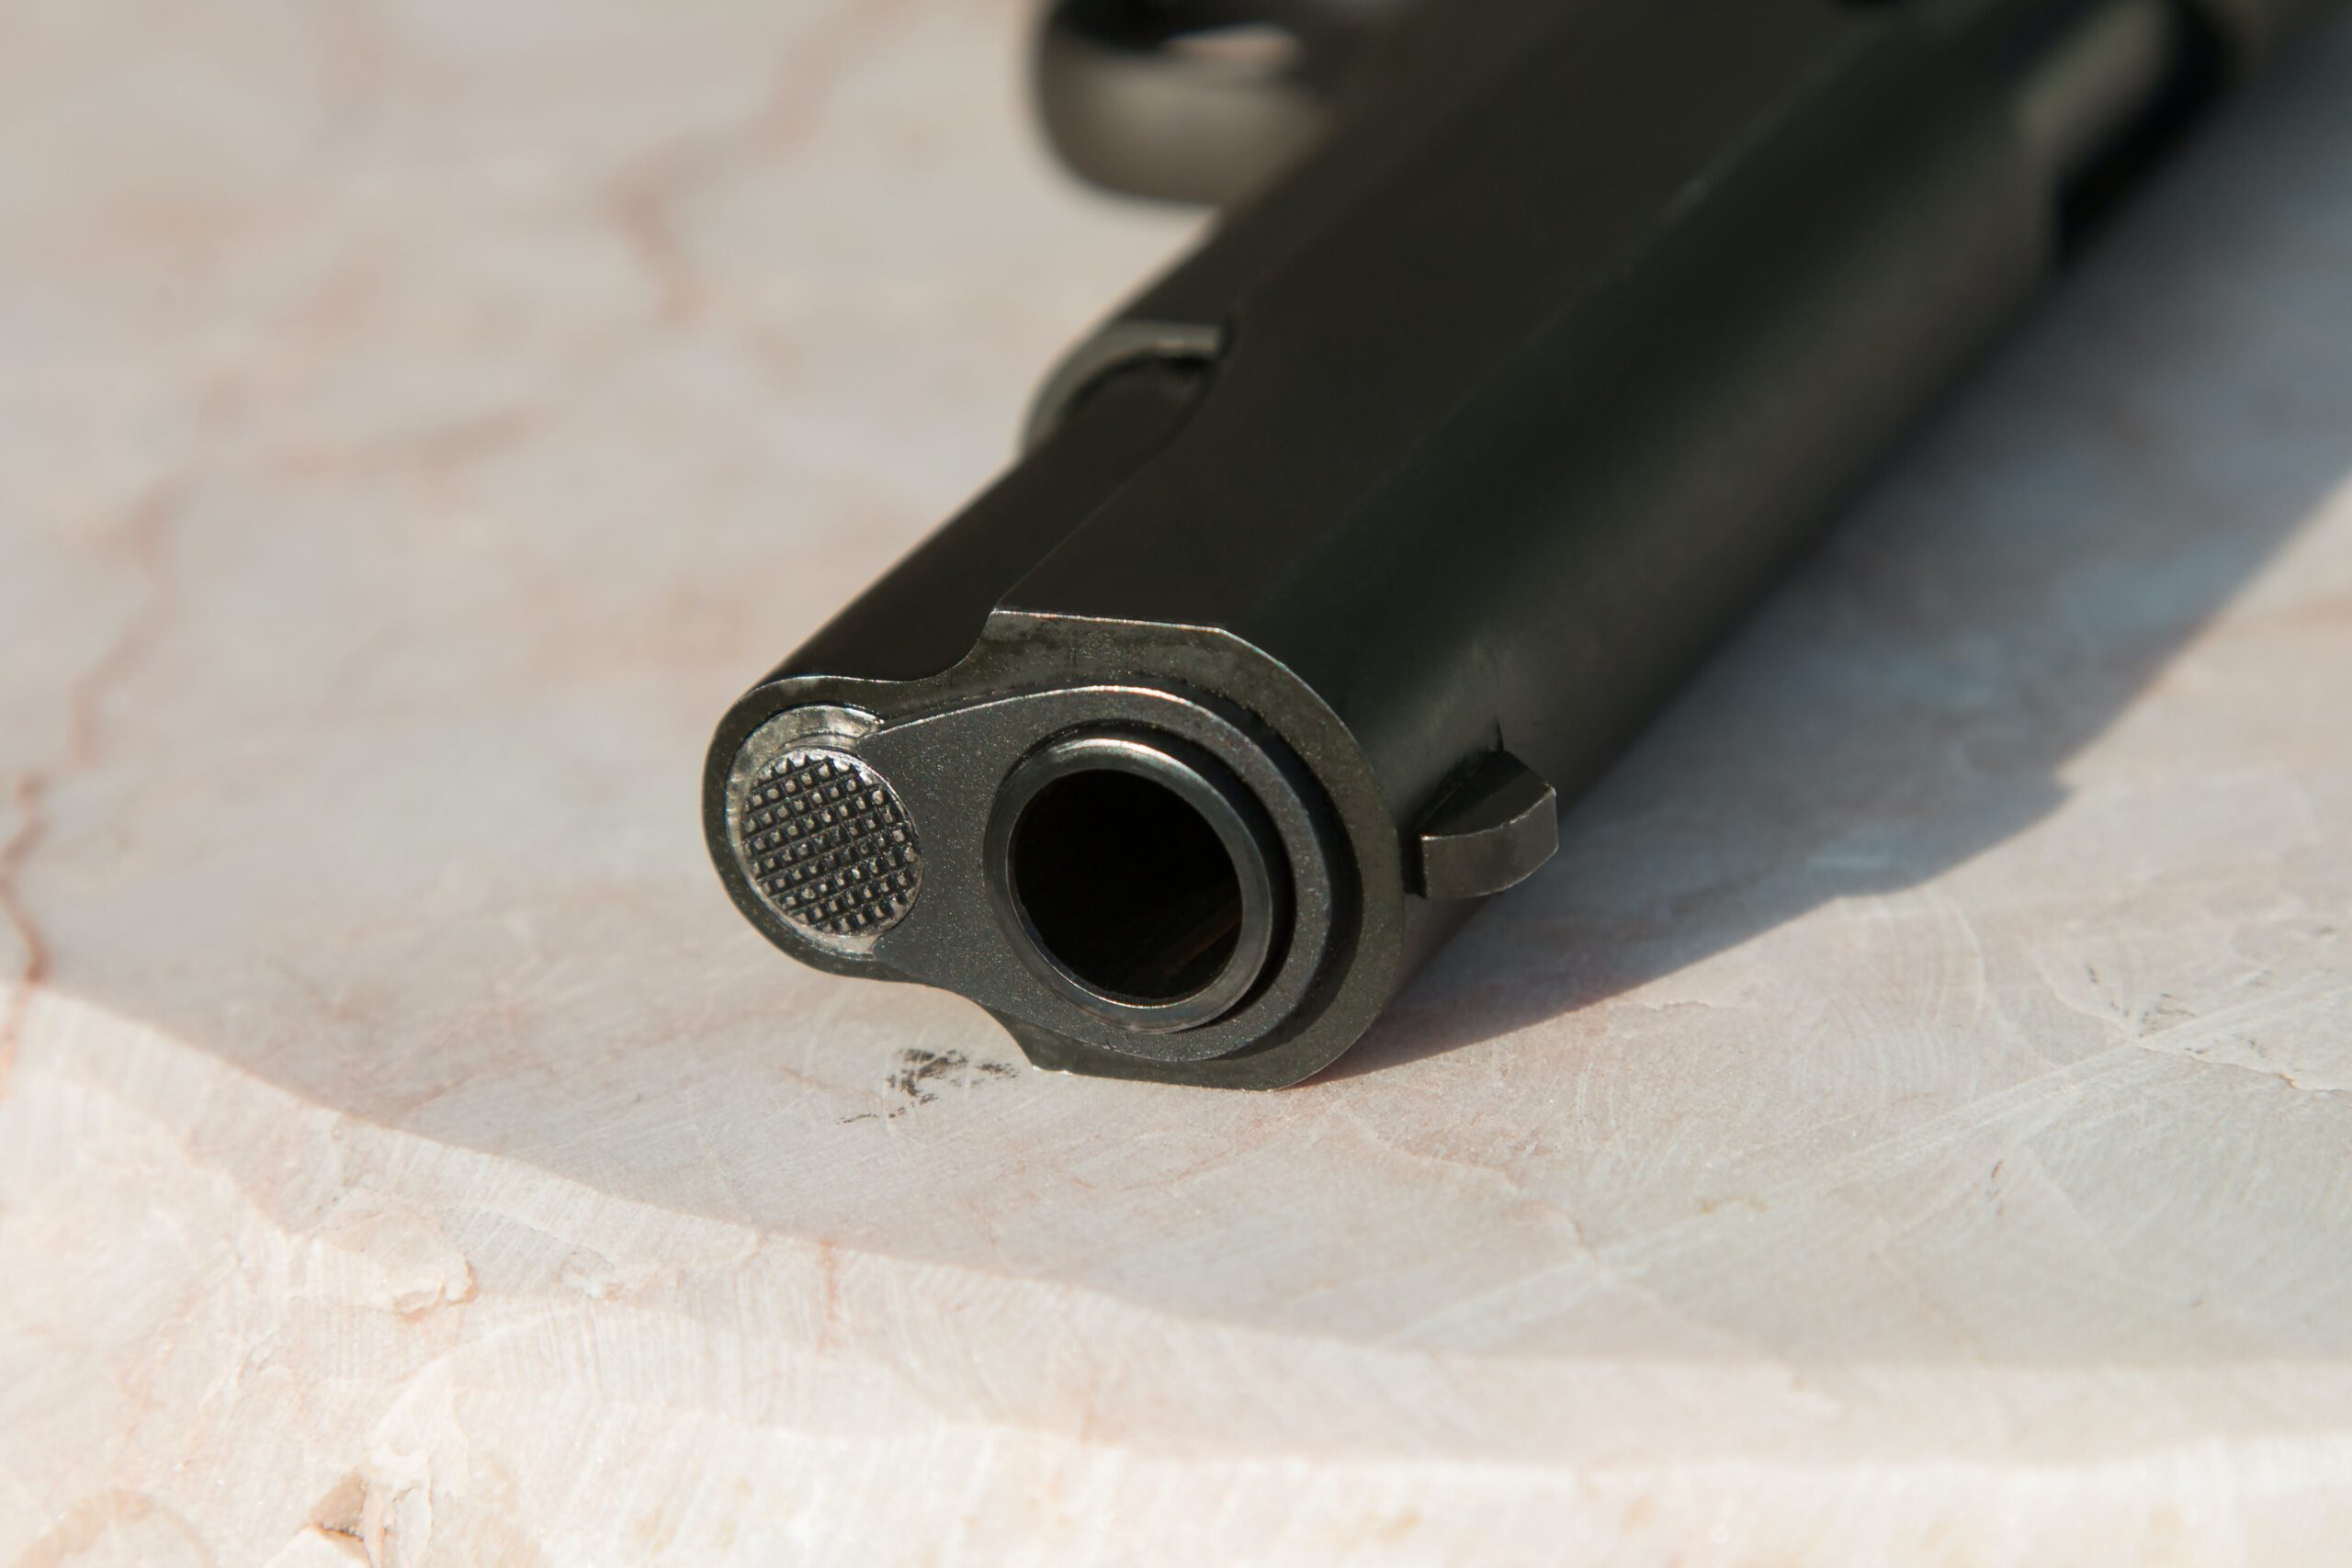 A closeup of the barrel of a gun